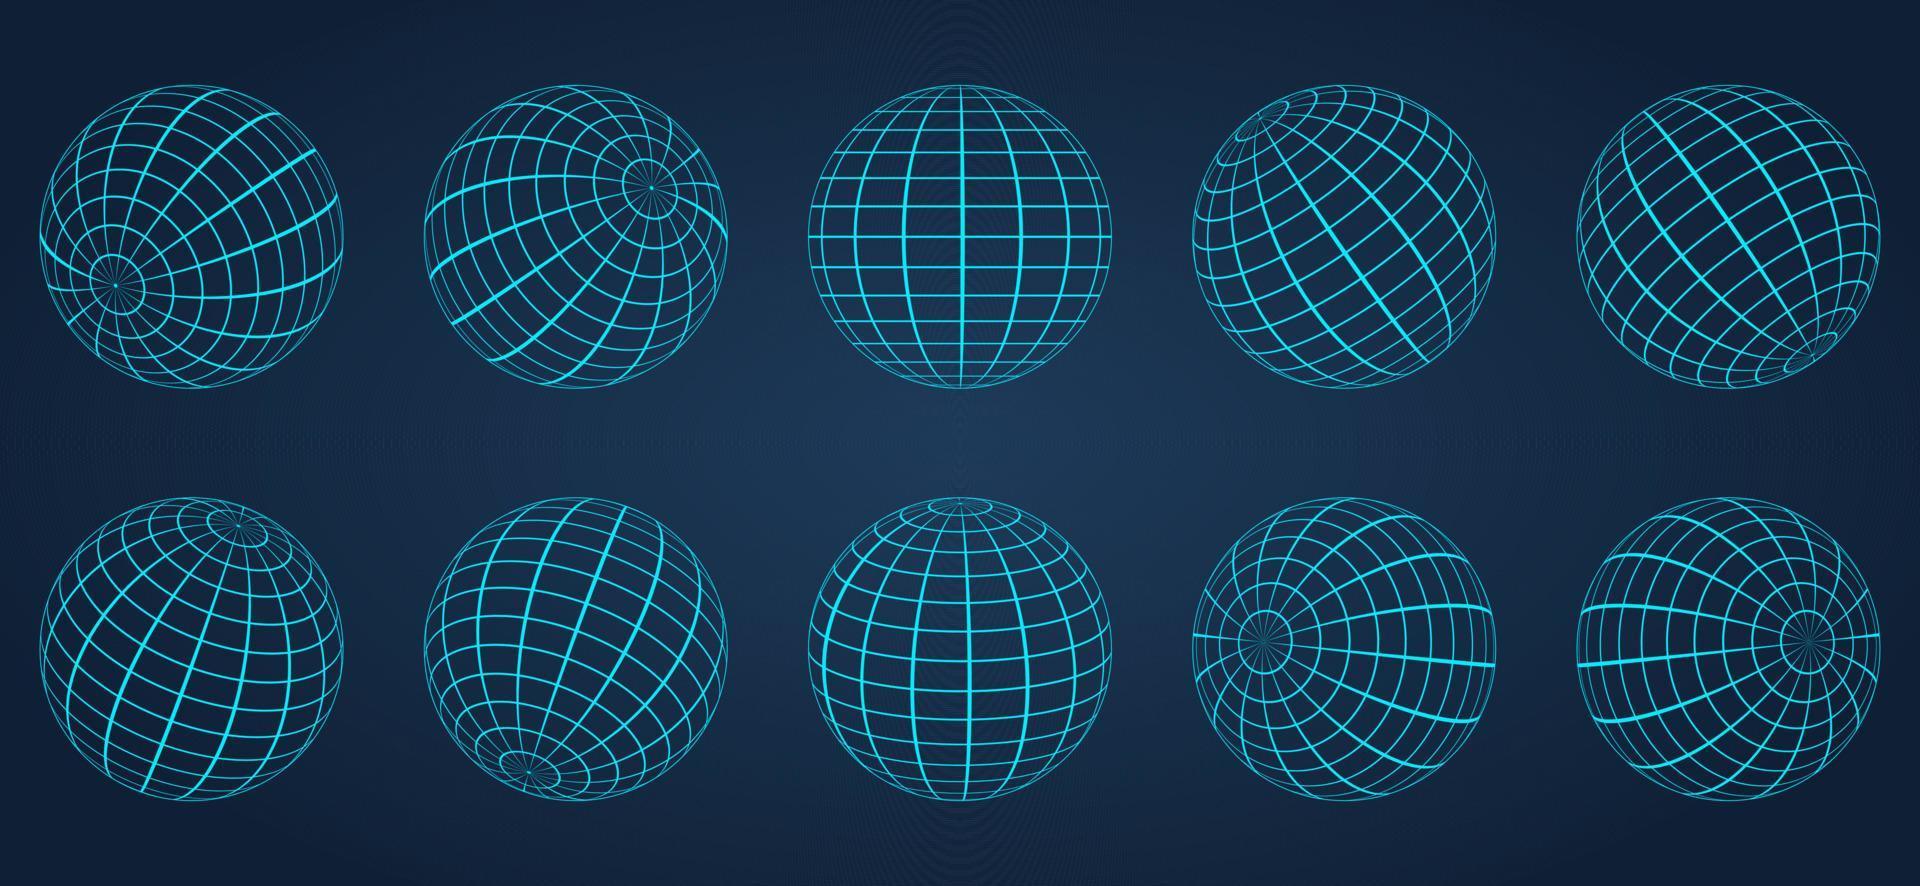 3d blå globe rutnät sfär på mörk bakgrund. geometrisk rund rutnät nätboll. wireframe glob yta. tråd globala jordens latitud och longitud. trådbunden linje 3d planet världen. vektor illustration.